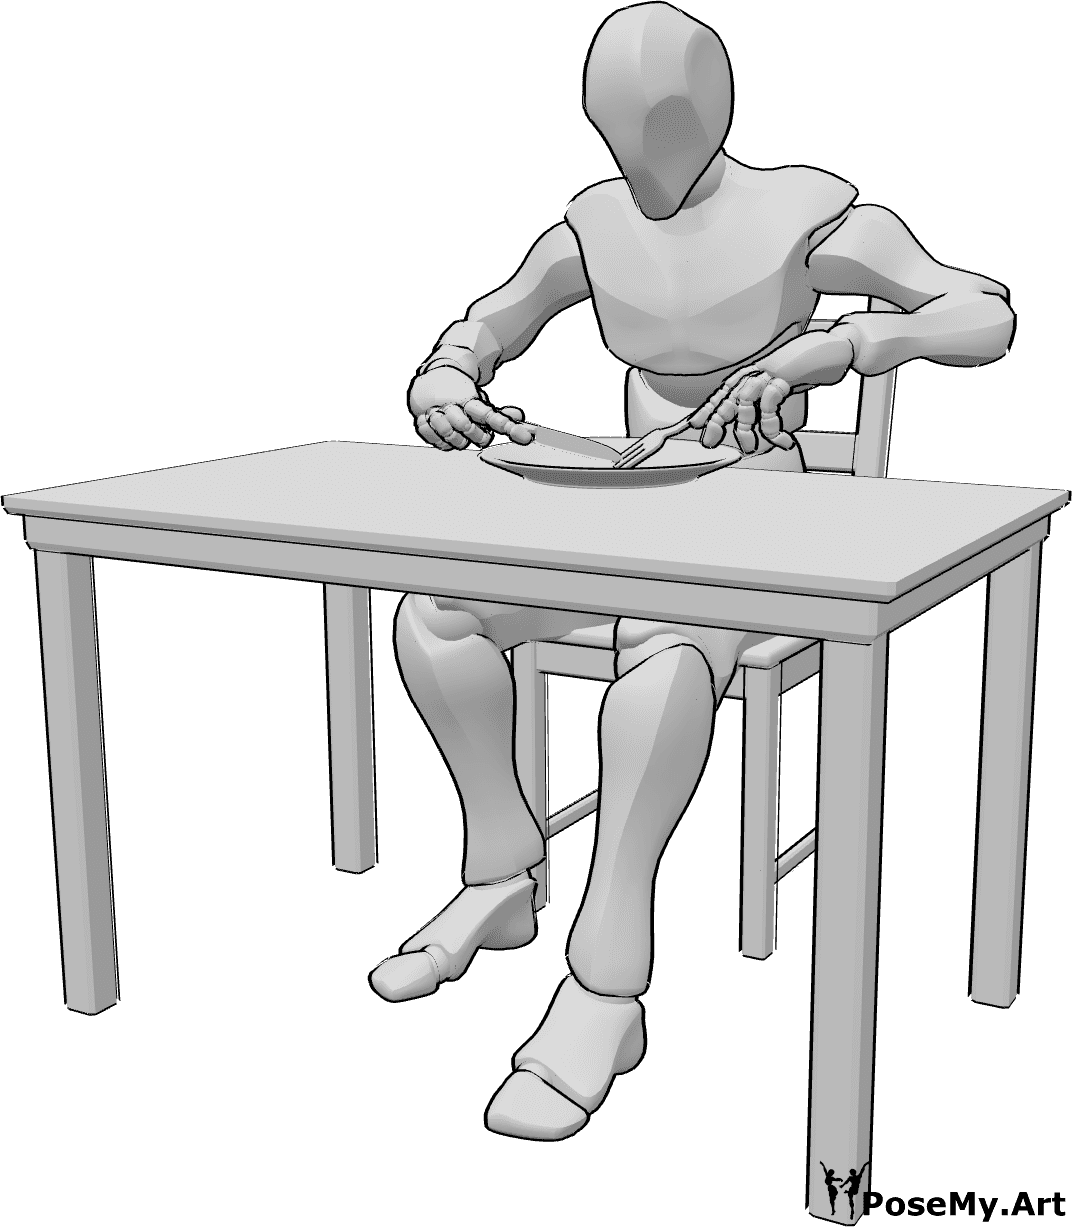 Référence des poses- Pose d'un homme mangeant - L'homme est assis à la table et mange, utilisant une fourchette et un couteau, mangeant une référence.